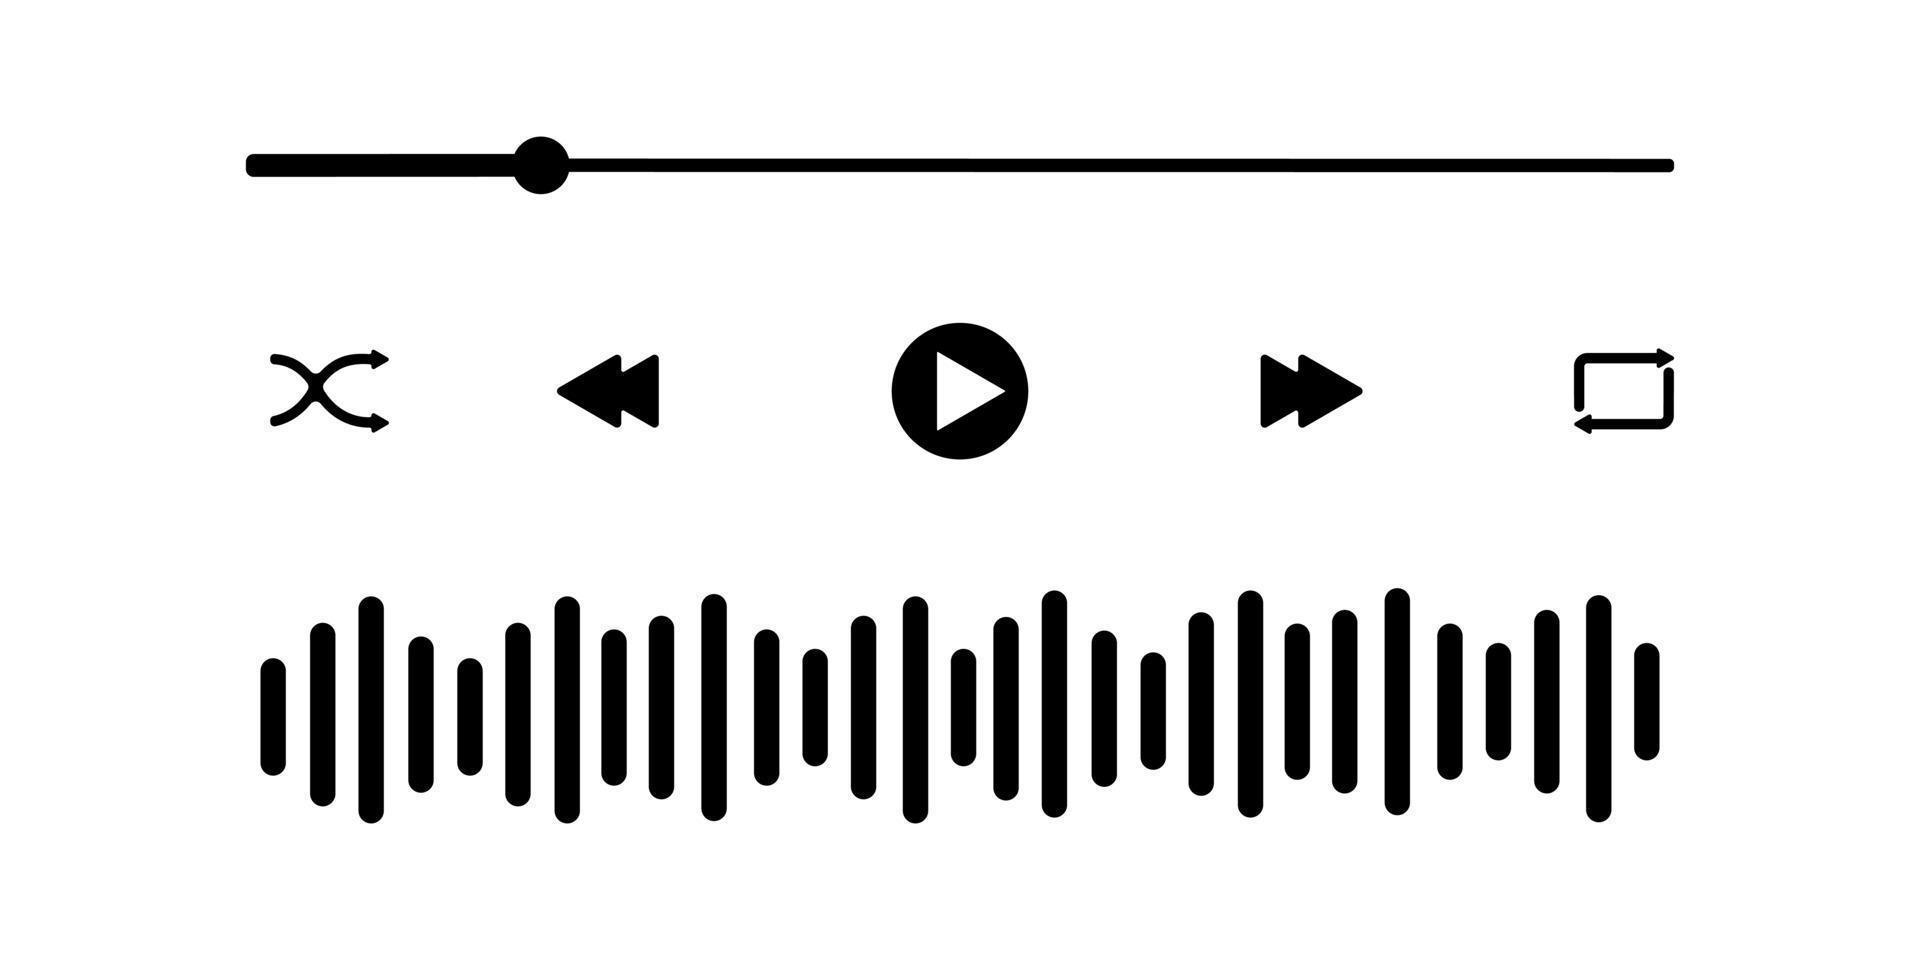 interface do reprodutor de áudio com barra de carregamento, botões, ícone de onda sonora. modelo gráfico de painel mediaplayer para aplicativo móvel vetor